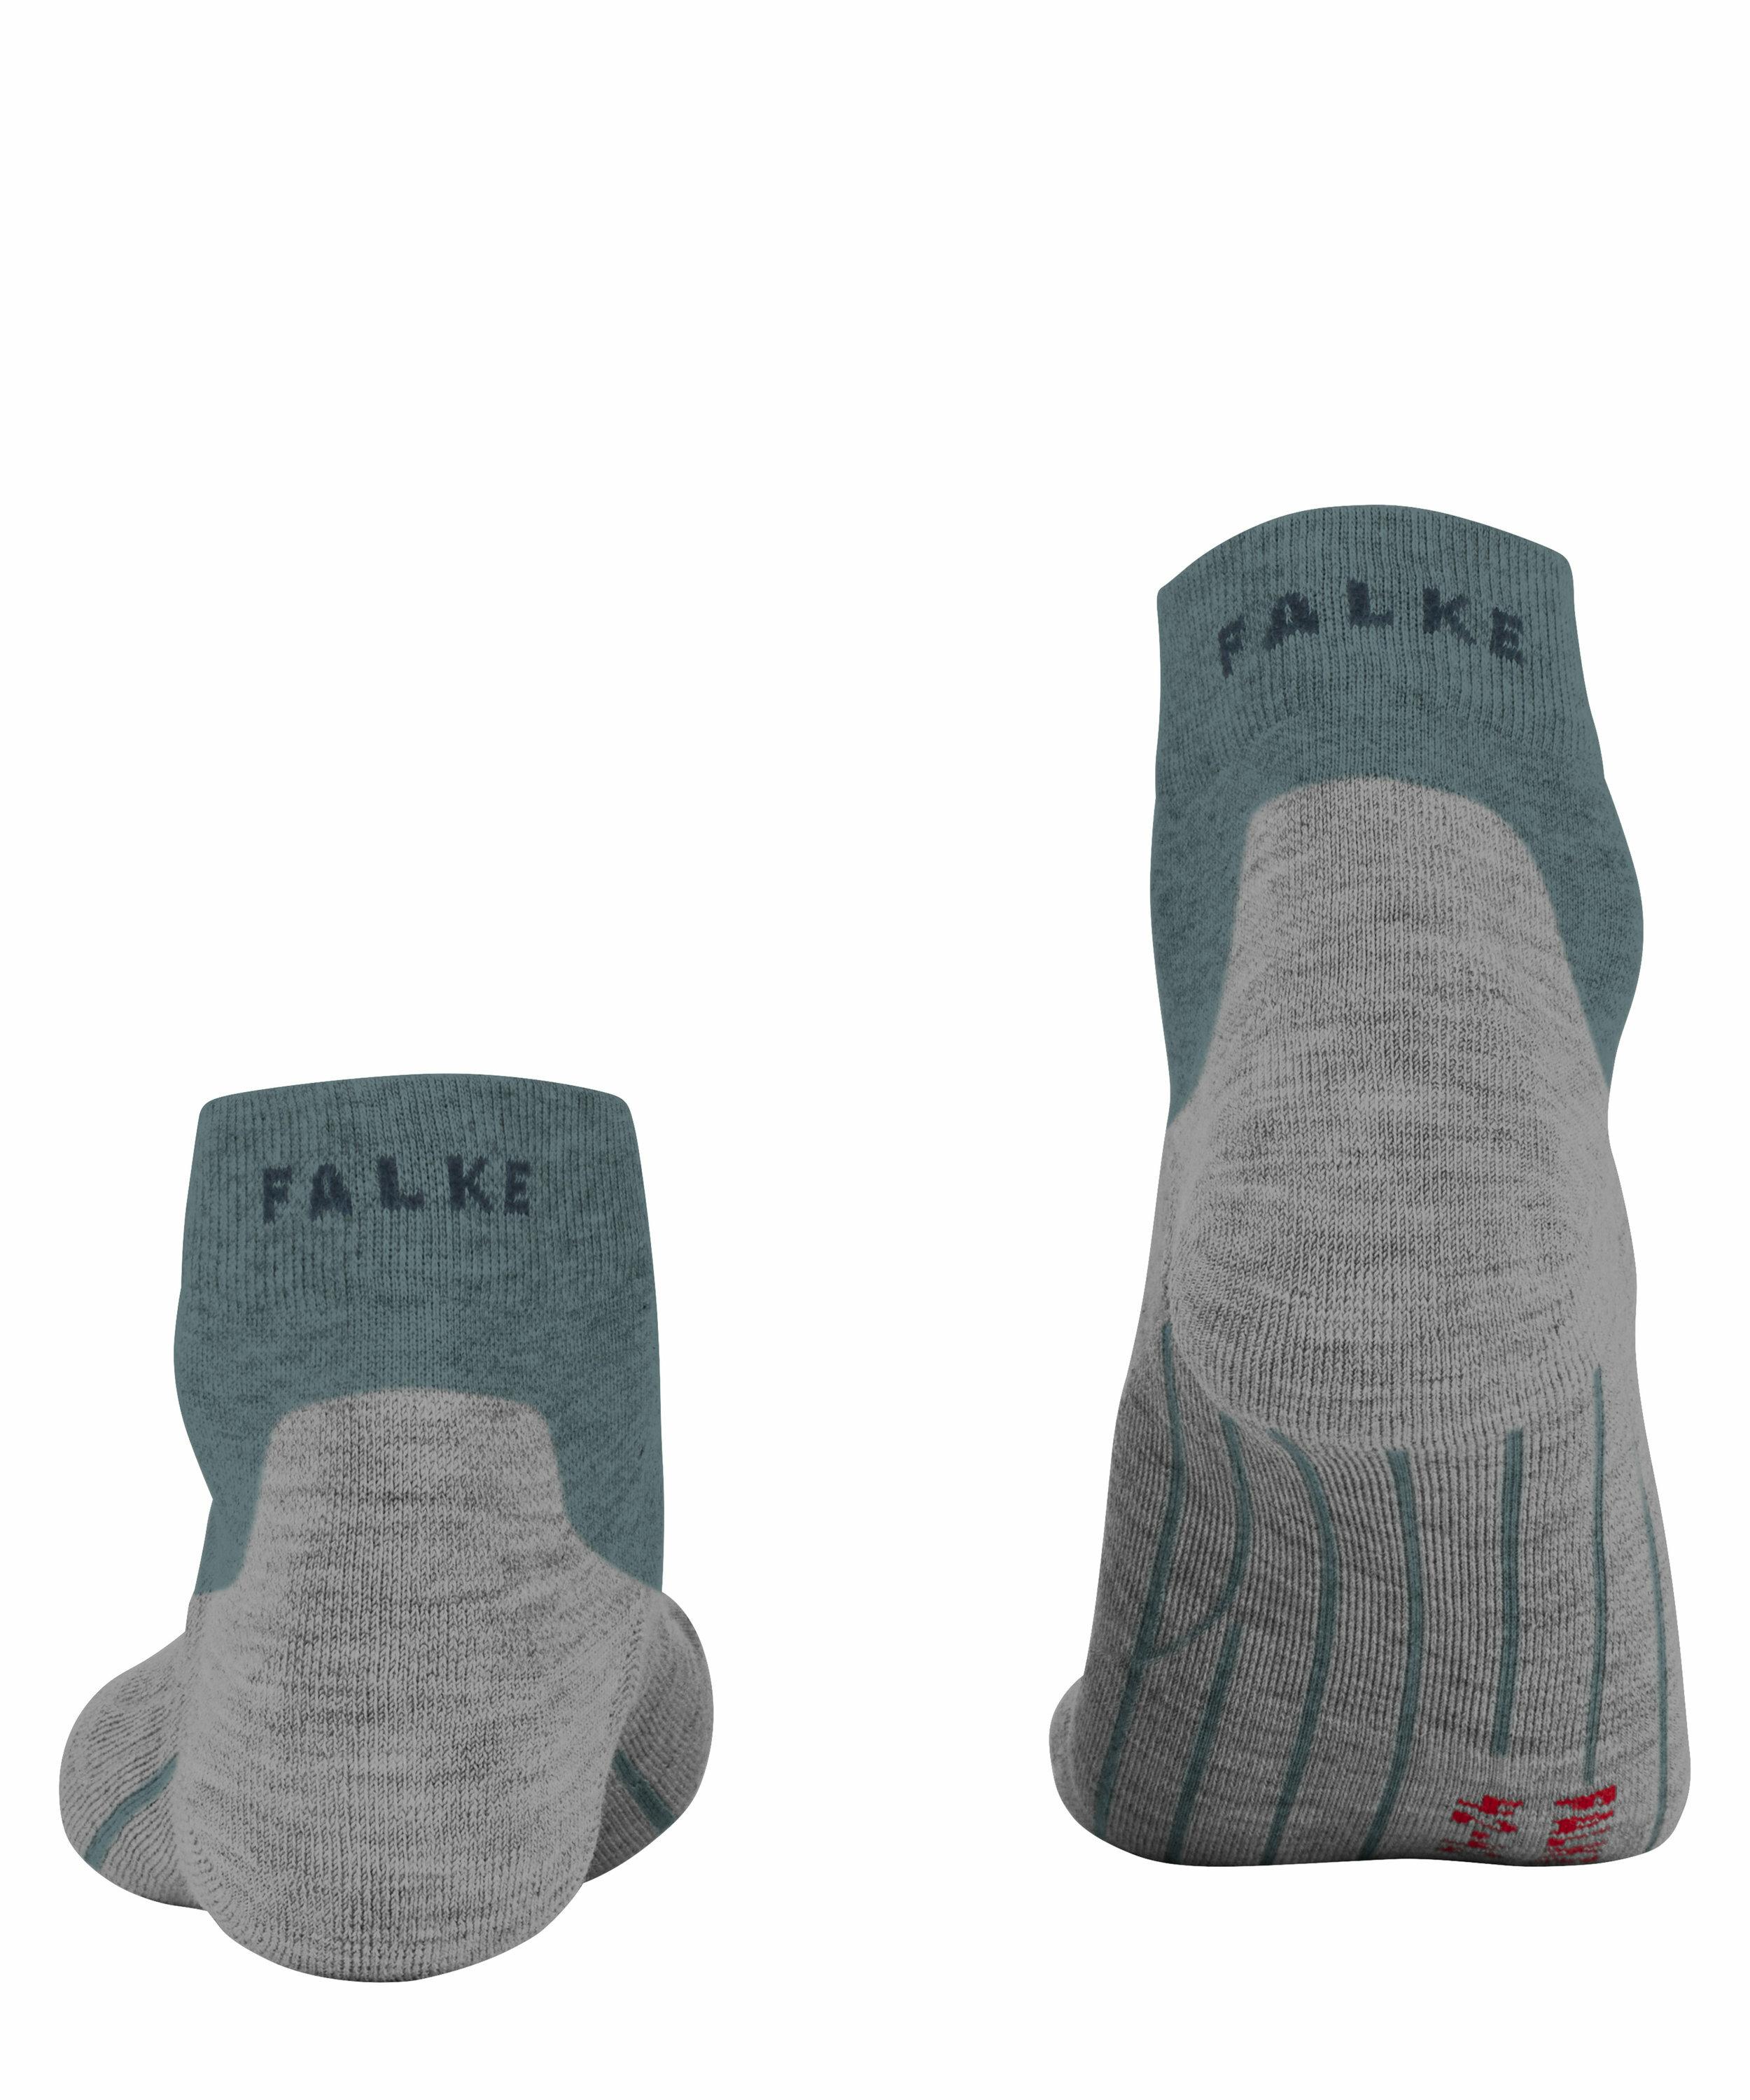 FALKE GO2 Short Herren Golf Socken, 39-41, Grau, Baumwolle, 16779-358302 günstig online kaufen